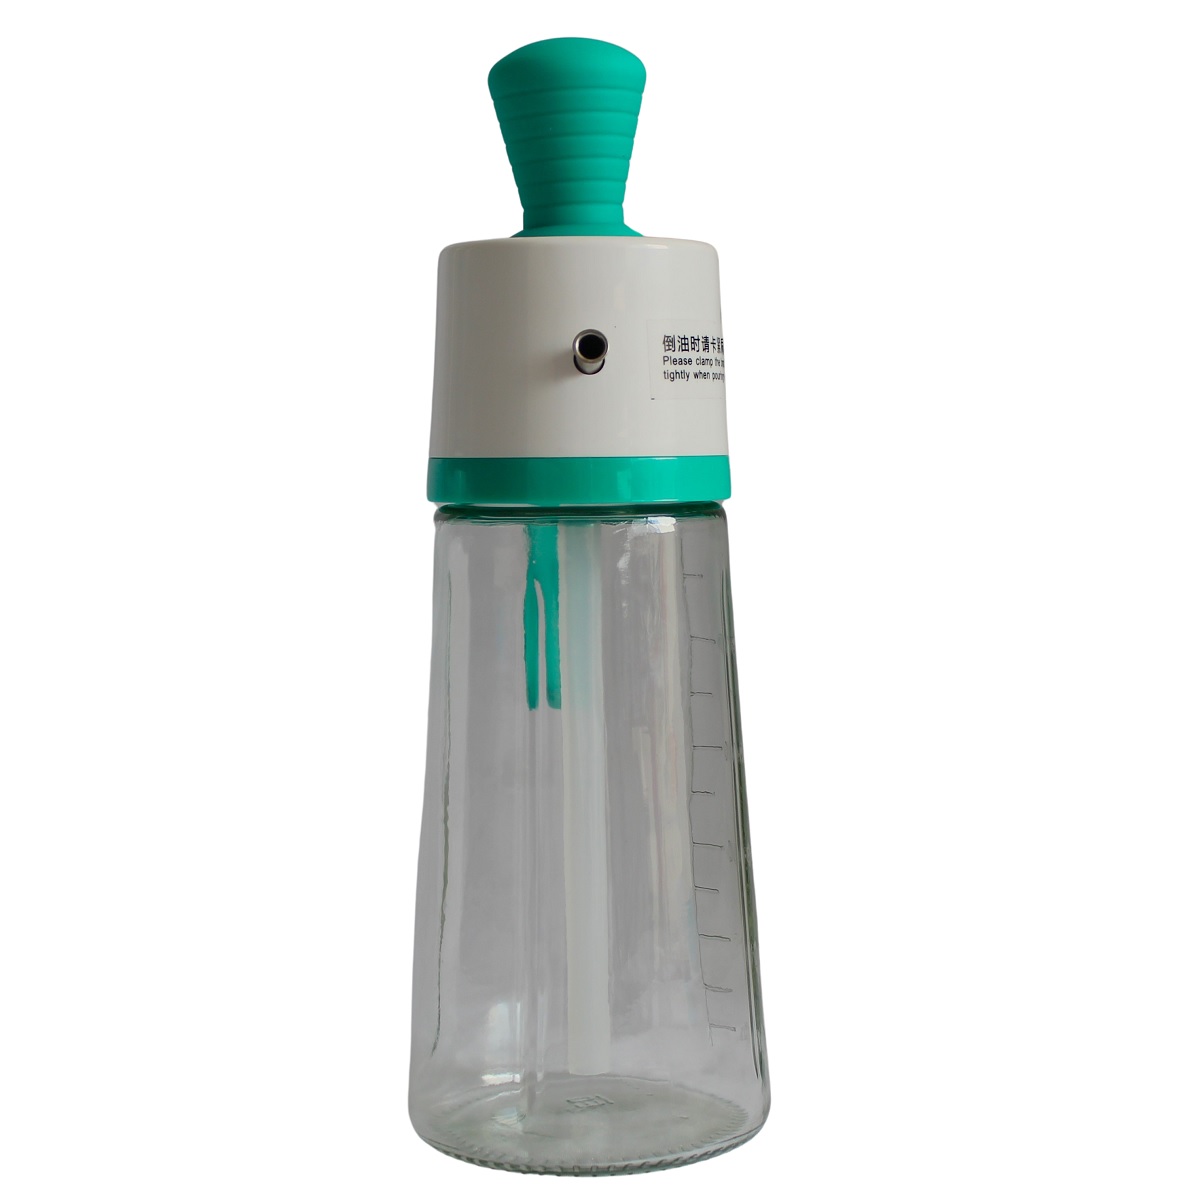 Botella De Spray Ajustable - Limpieza Eficaz Y Facil